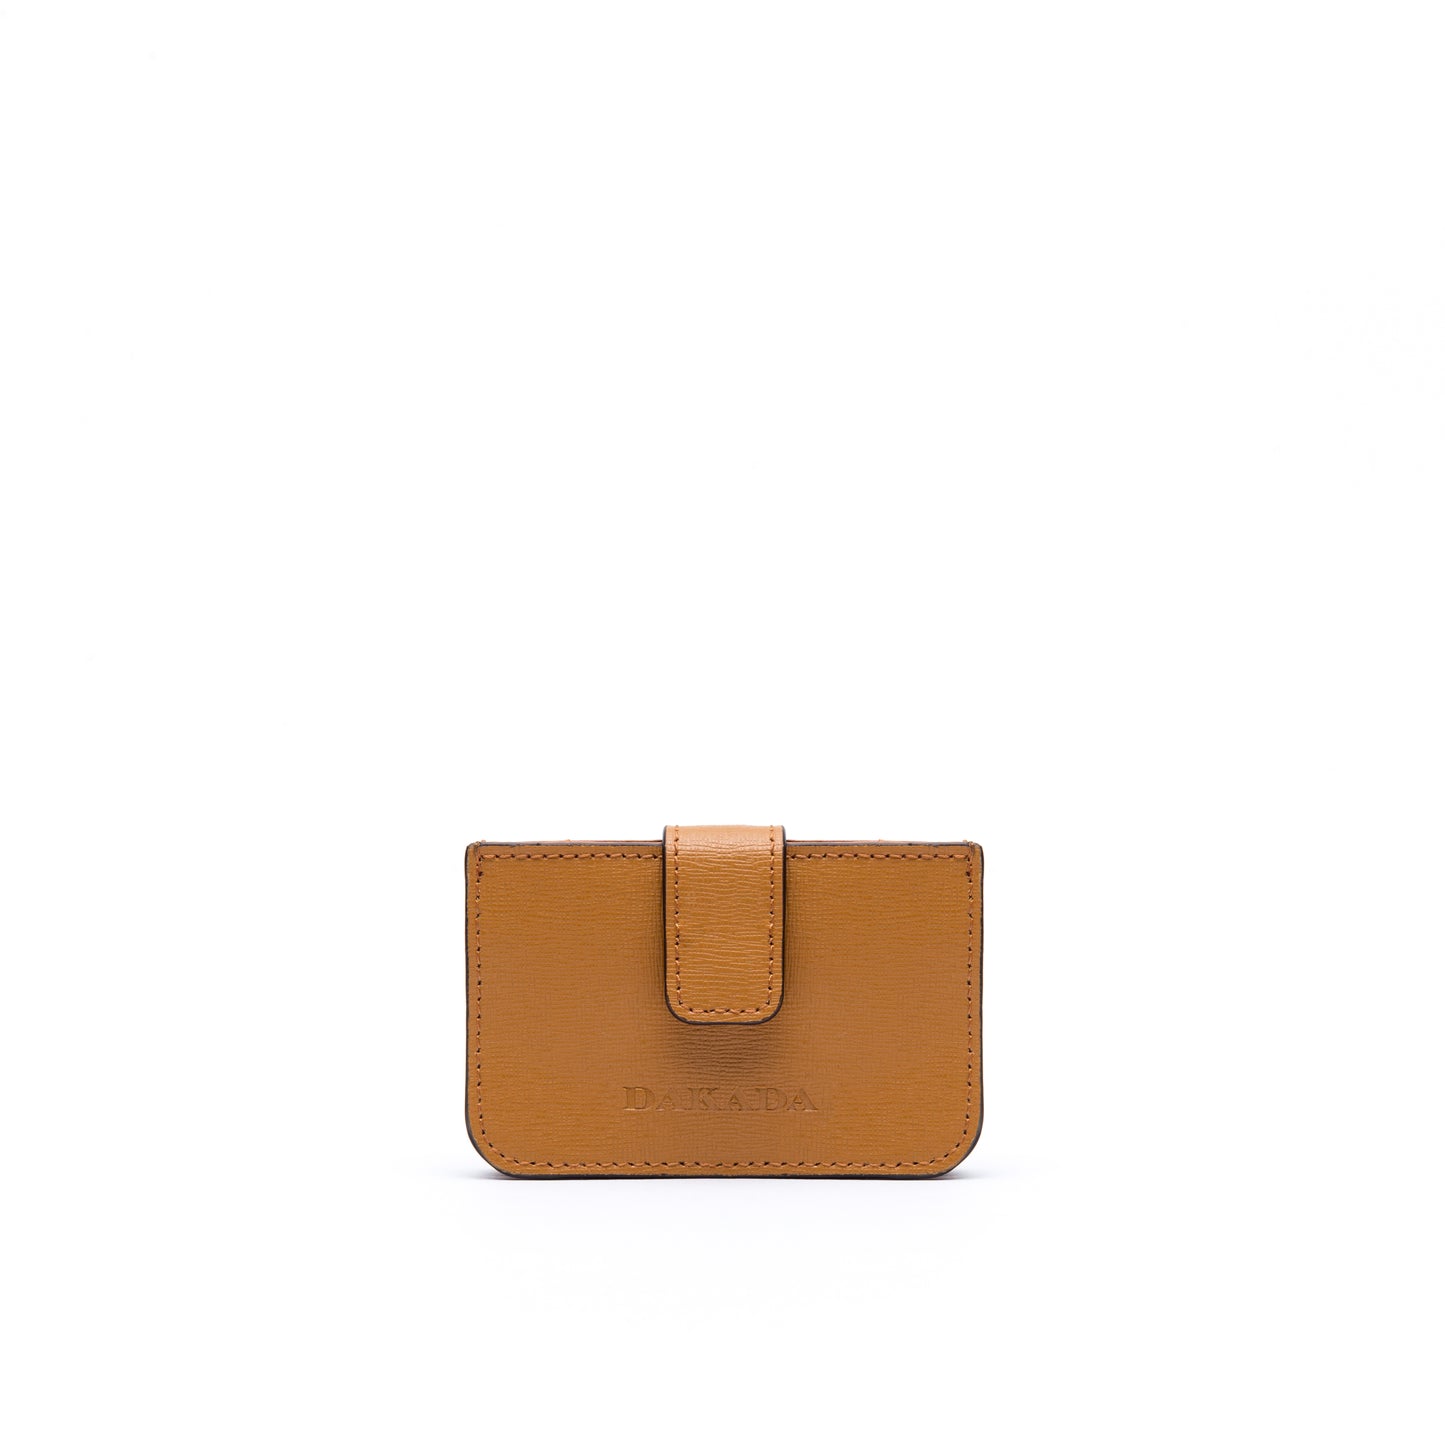 LA Card Holder- Camel Leather